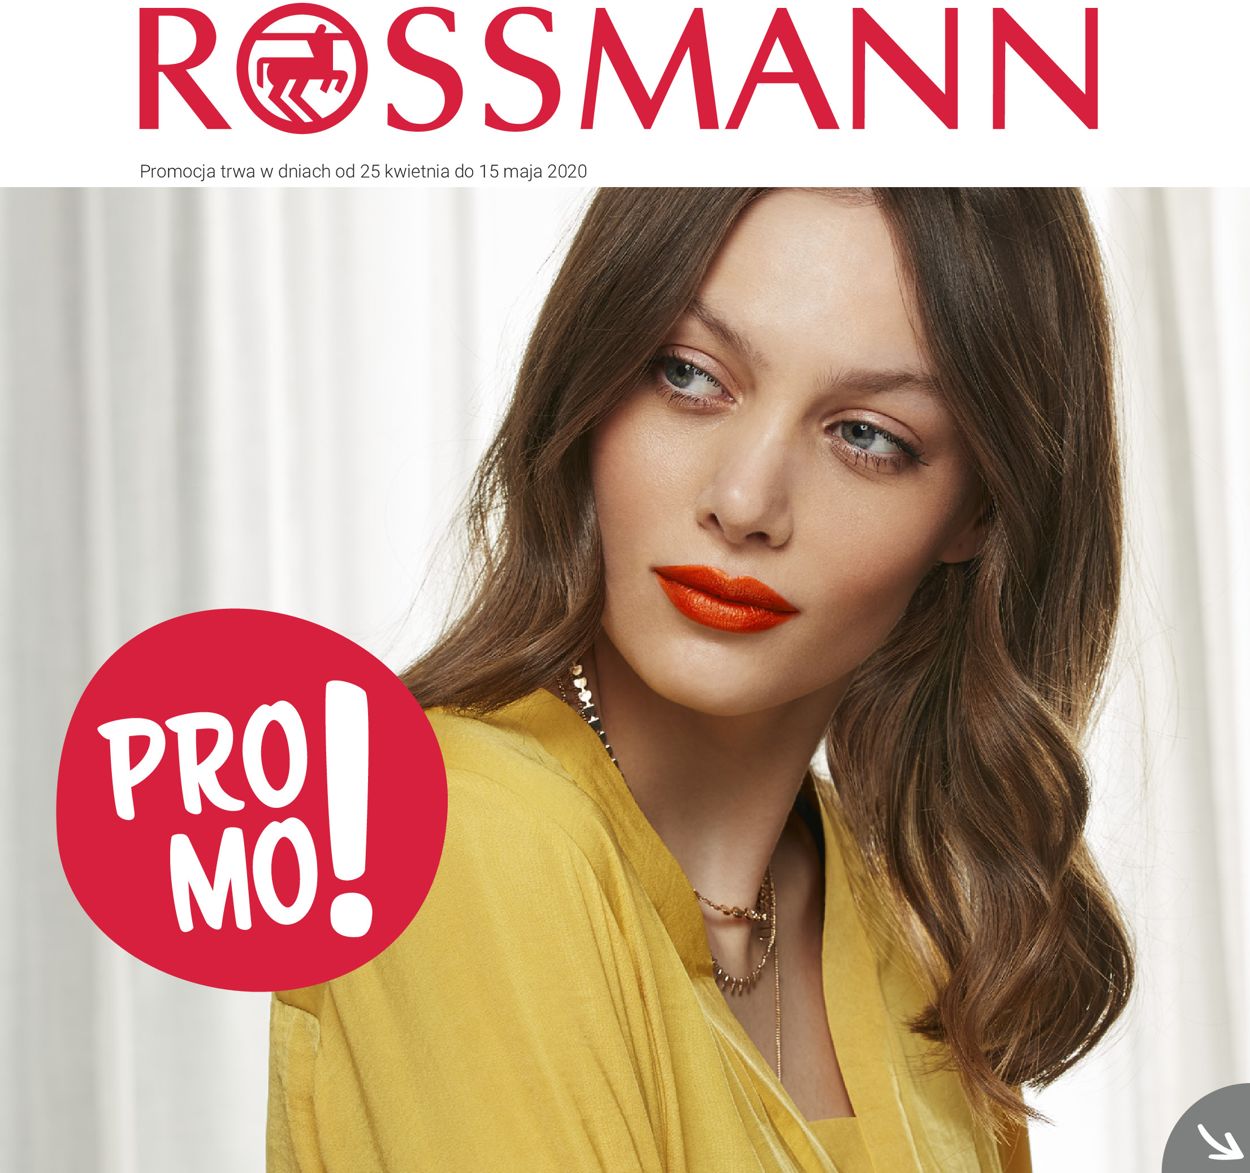 Gazetka promocyjna Rossmann - 25.04-15.05.2020